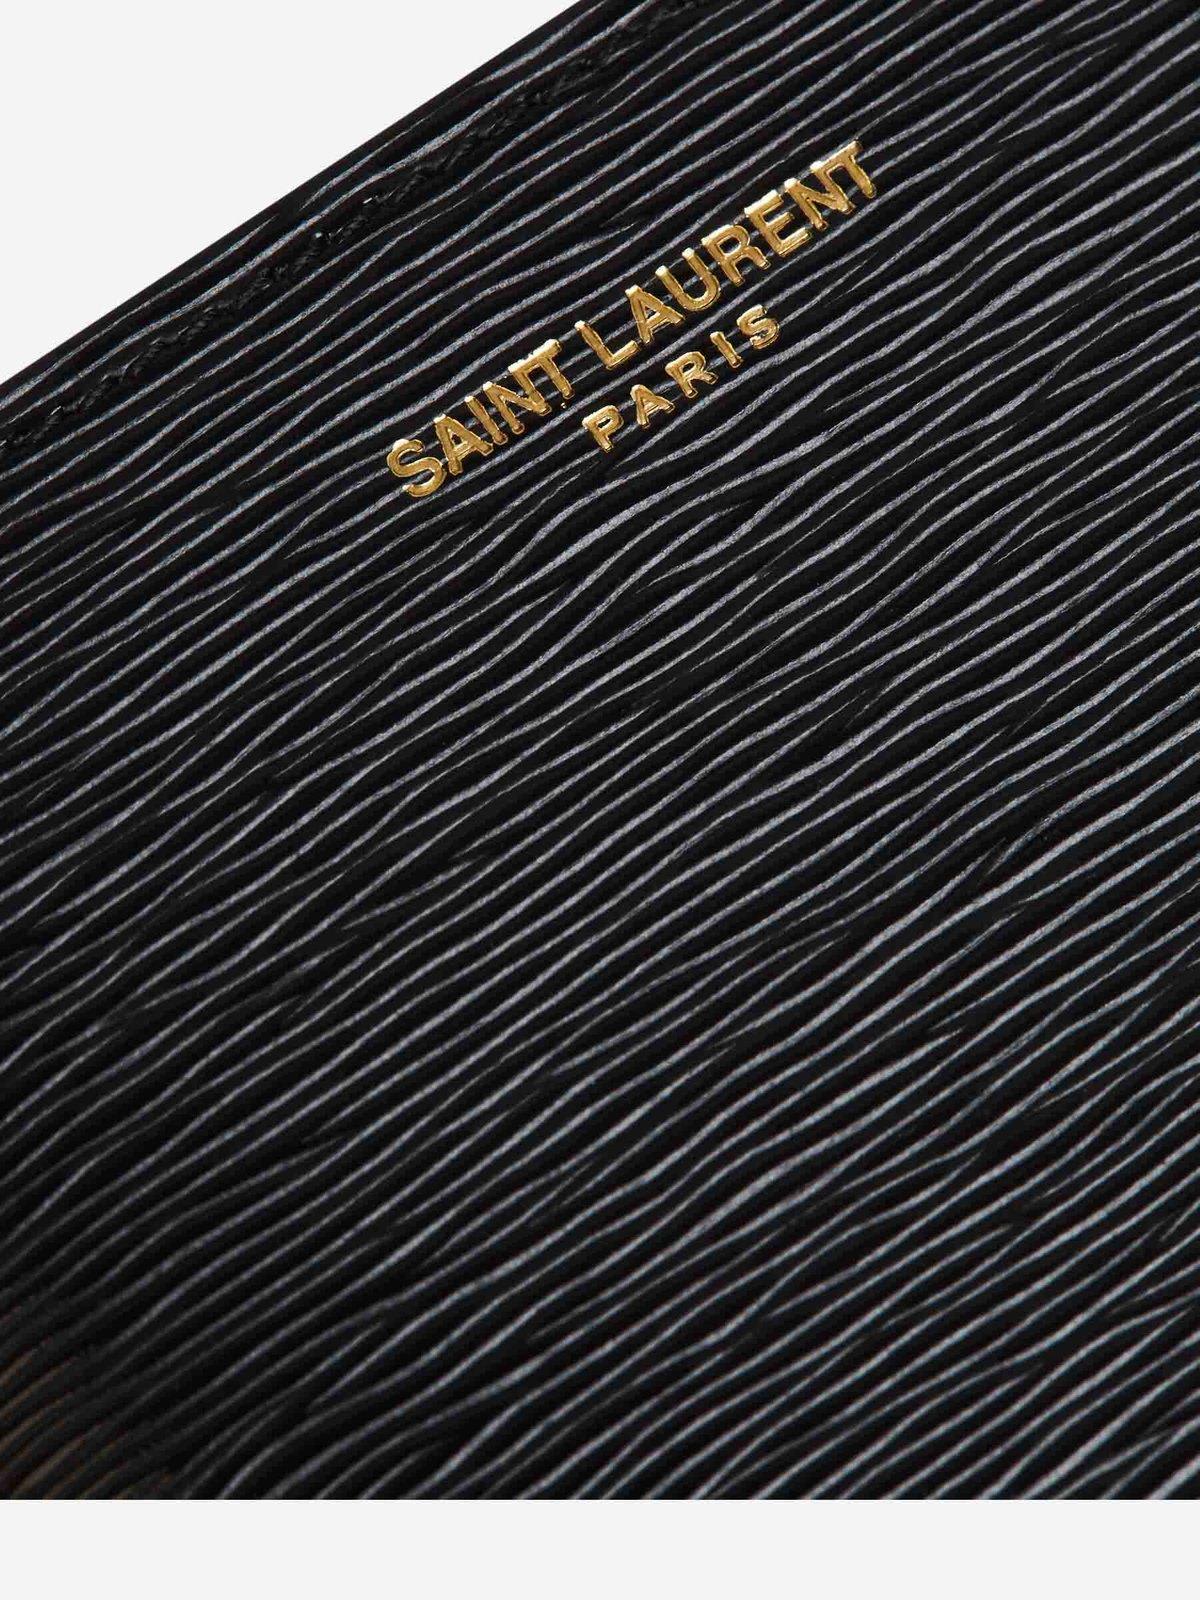 Shop Saint Laurent Logo Engraved Bifold Wallet In Black